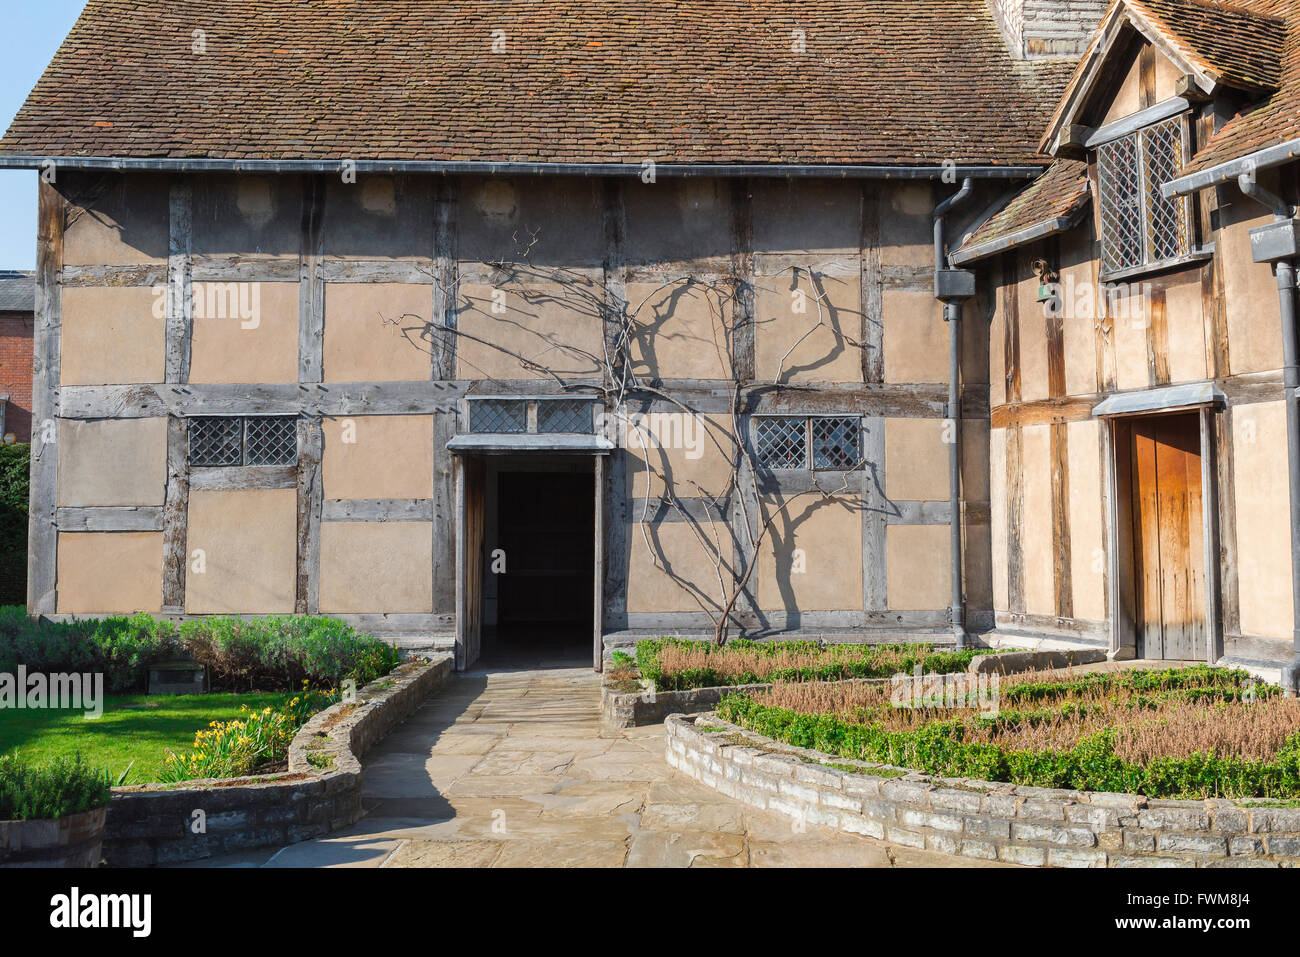 Fachwerkbau, Blick auf die Rückseite des mittelalterlichen Fachwerkhauses, in dem Shakespeare in der Henley Street, Stratford Upon Avon, England, geboren wurde Stockfoto